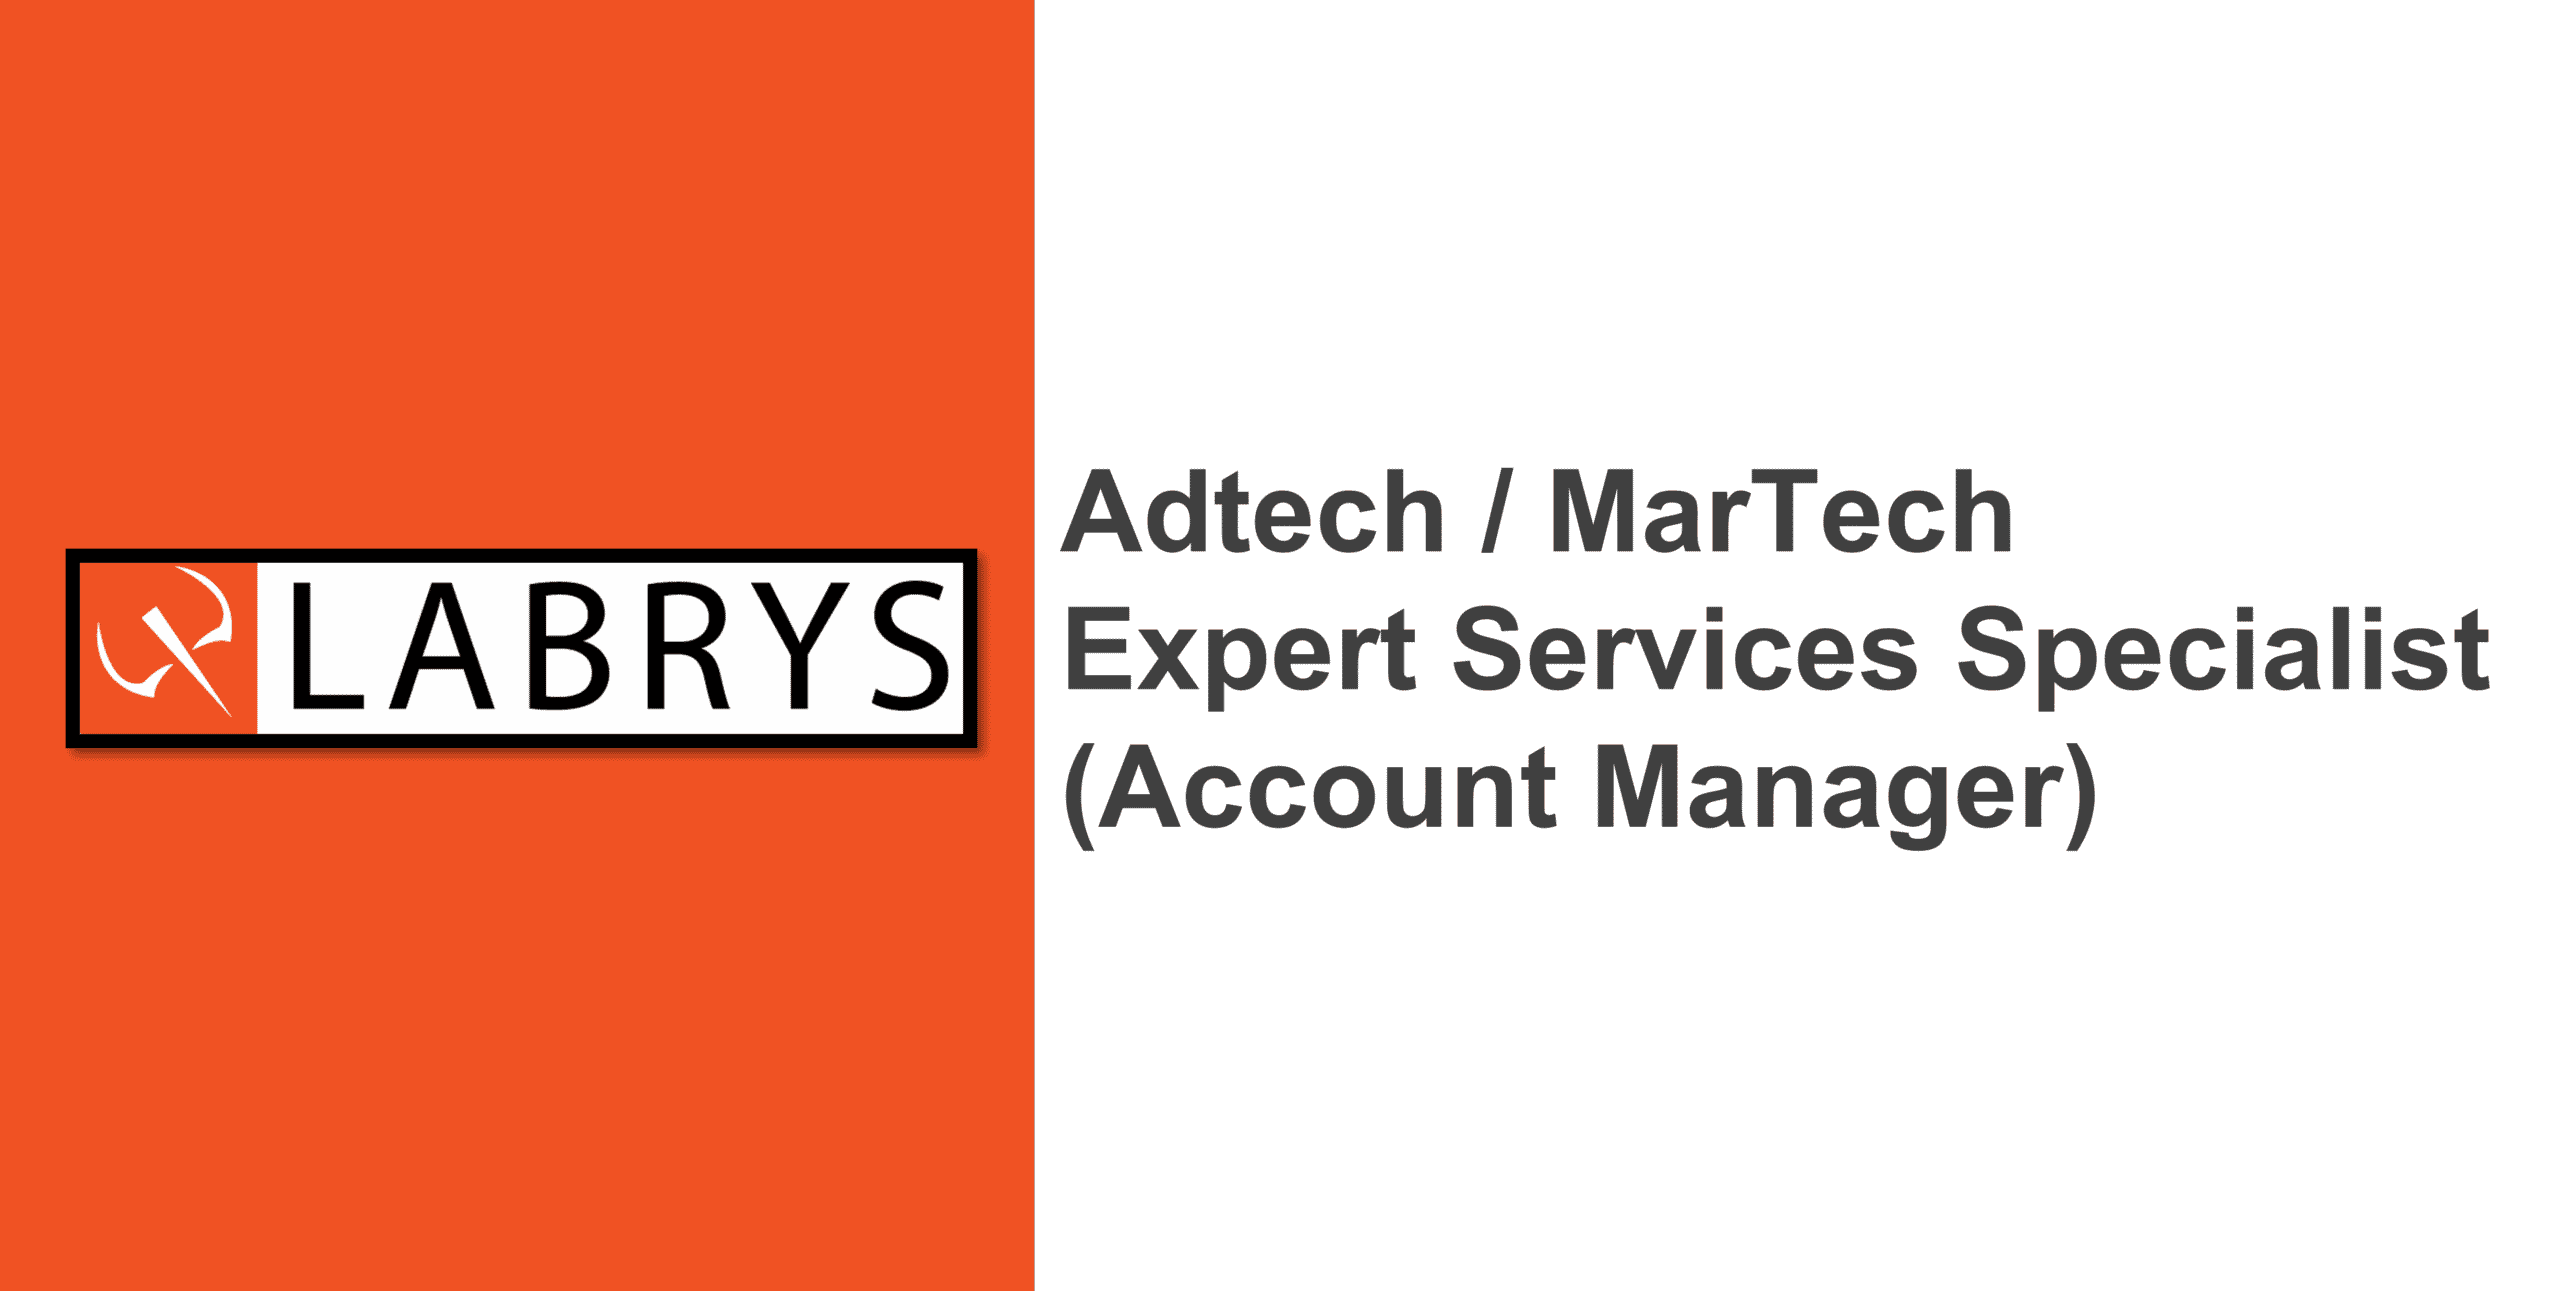 AdTech / MarTech Expert & Strategic Services Specialist